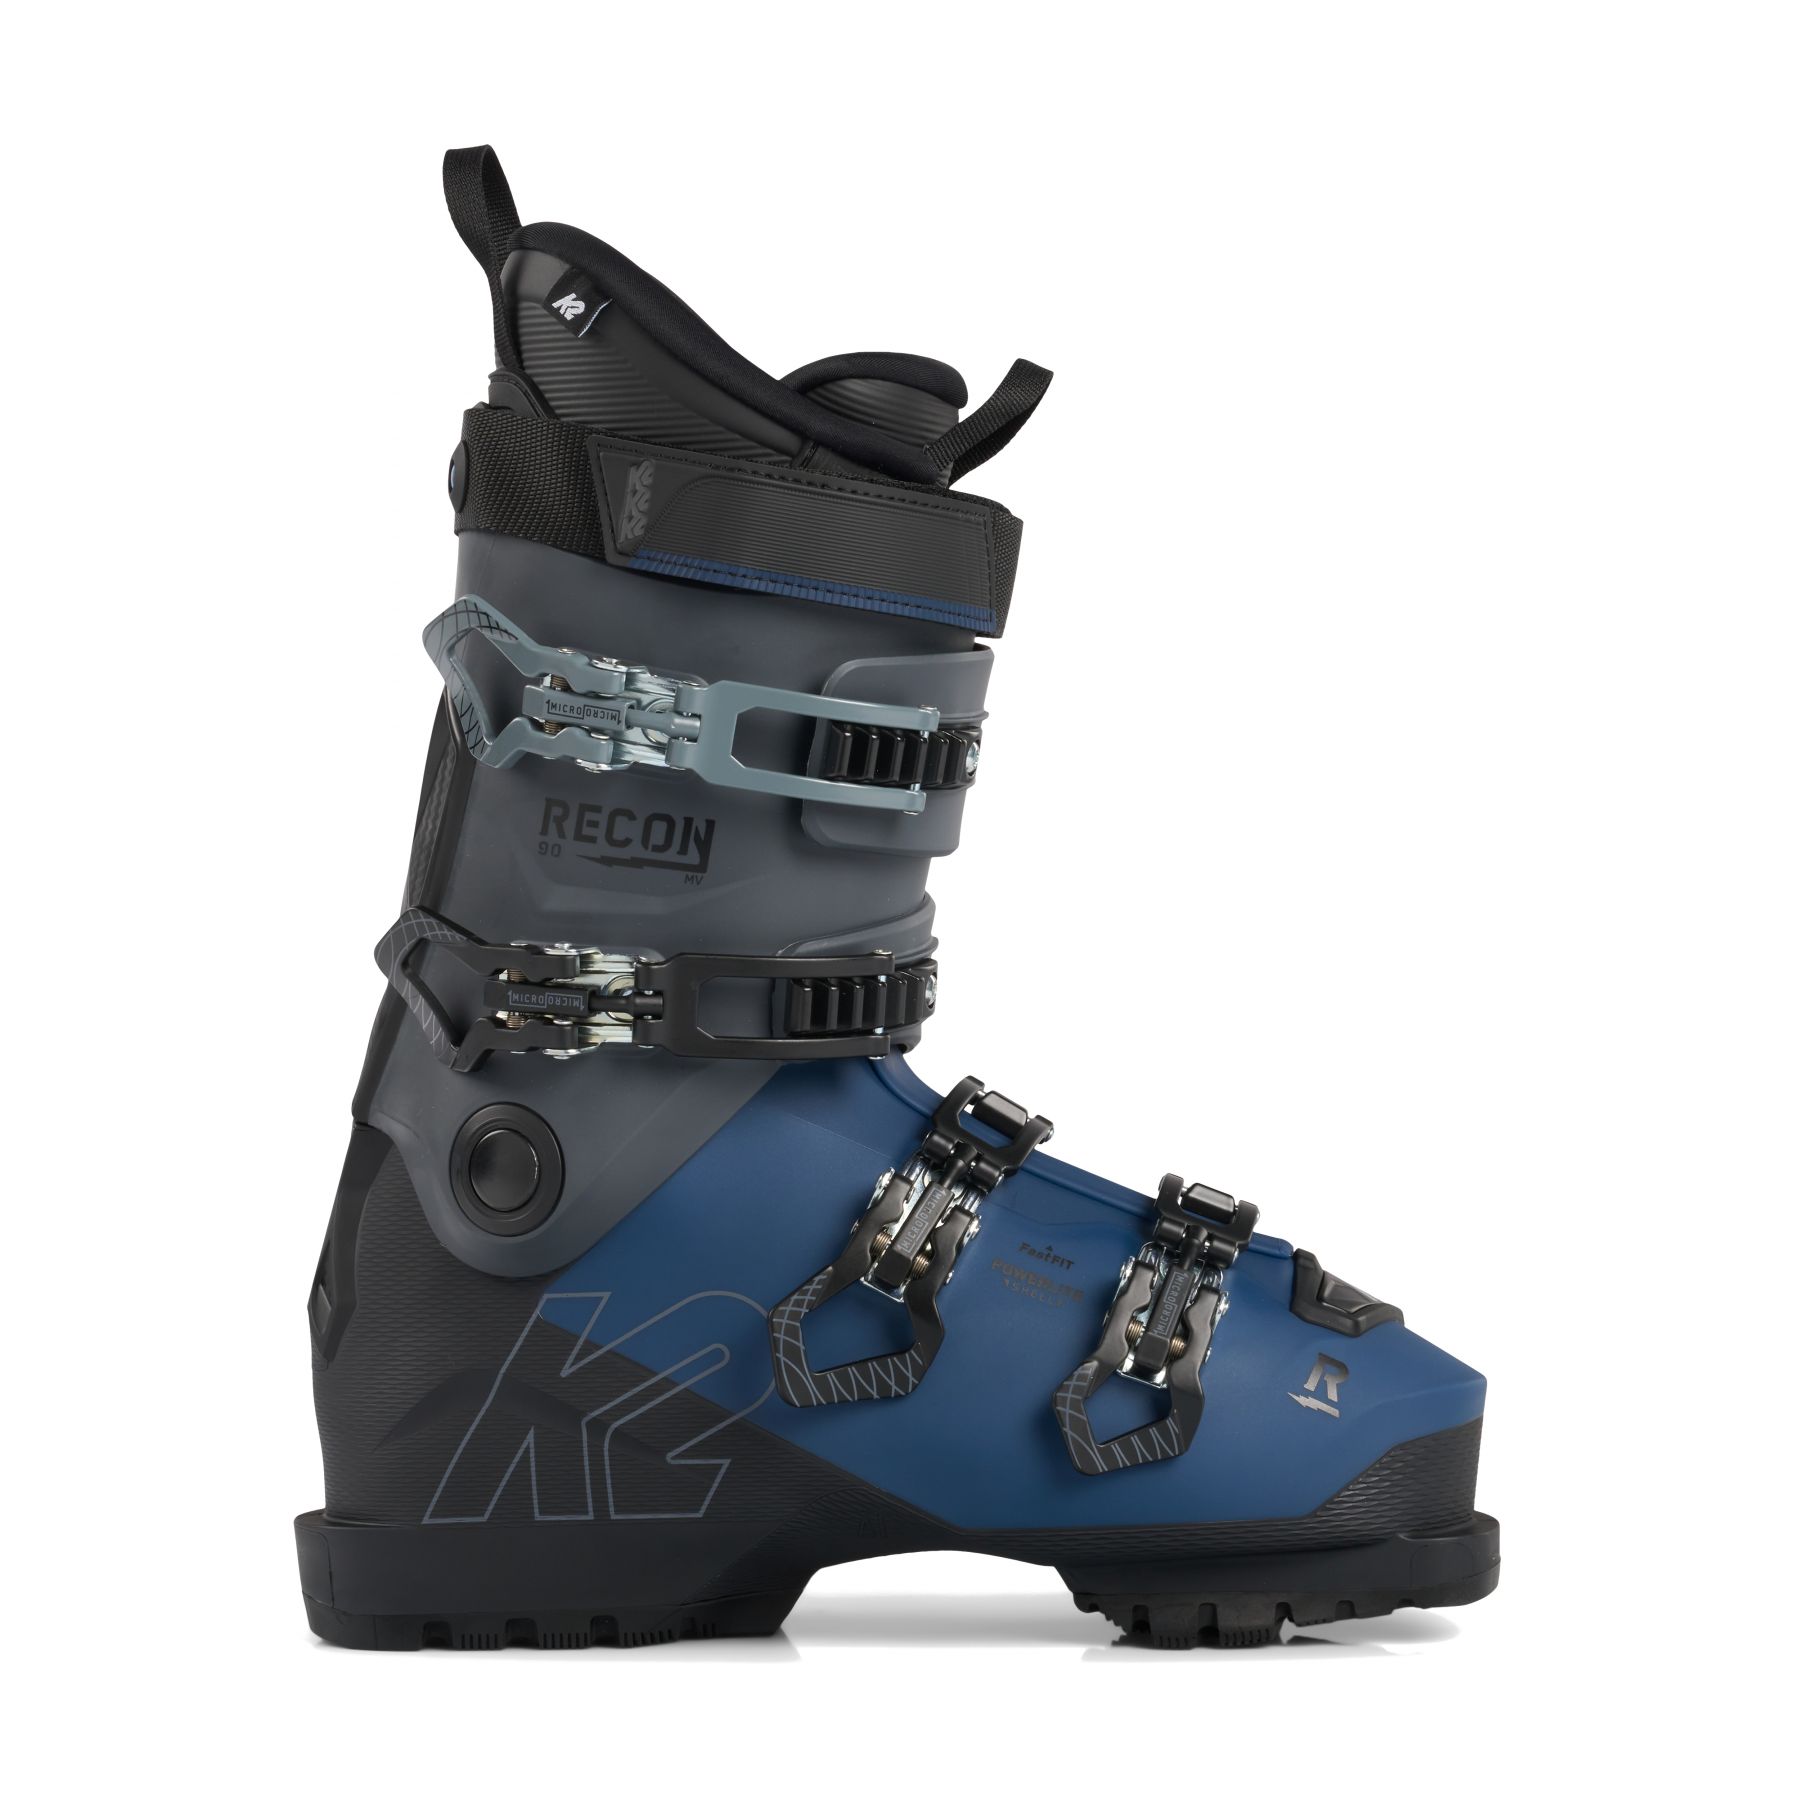 Billede af K2 Recon 90 MV Gripwalk, skistøvler, herre, blå